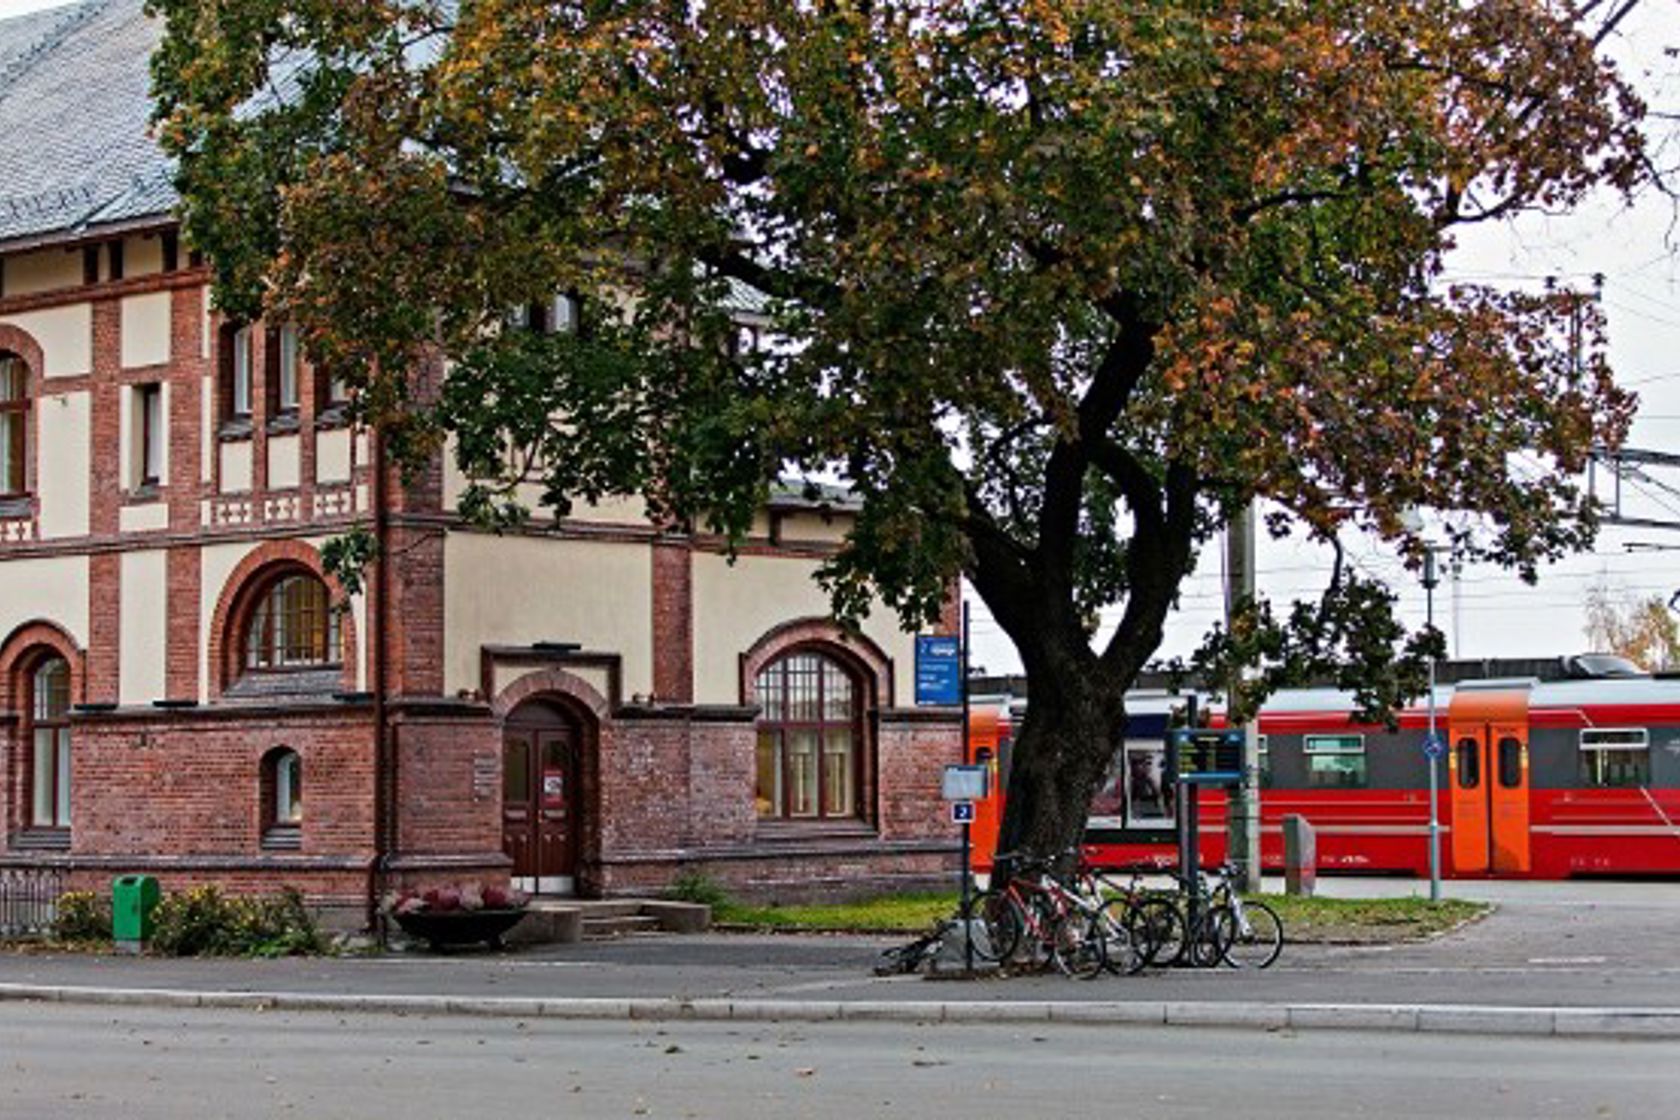 Outside Gjøvik station